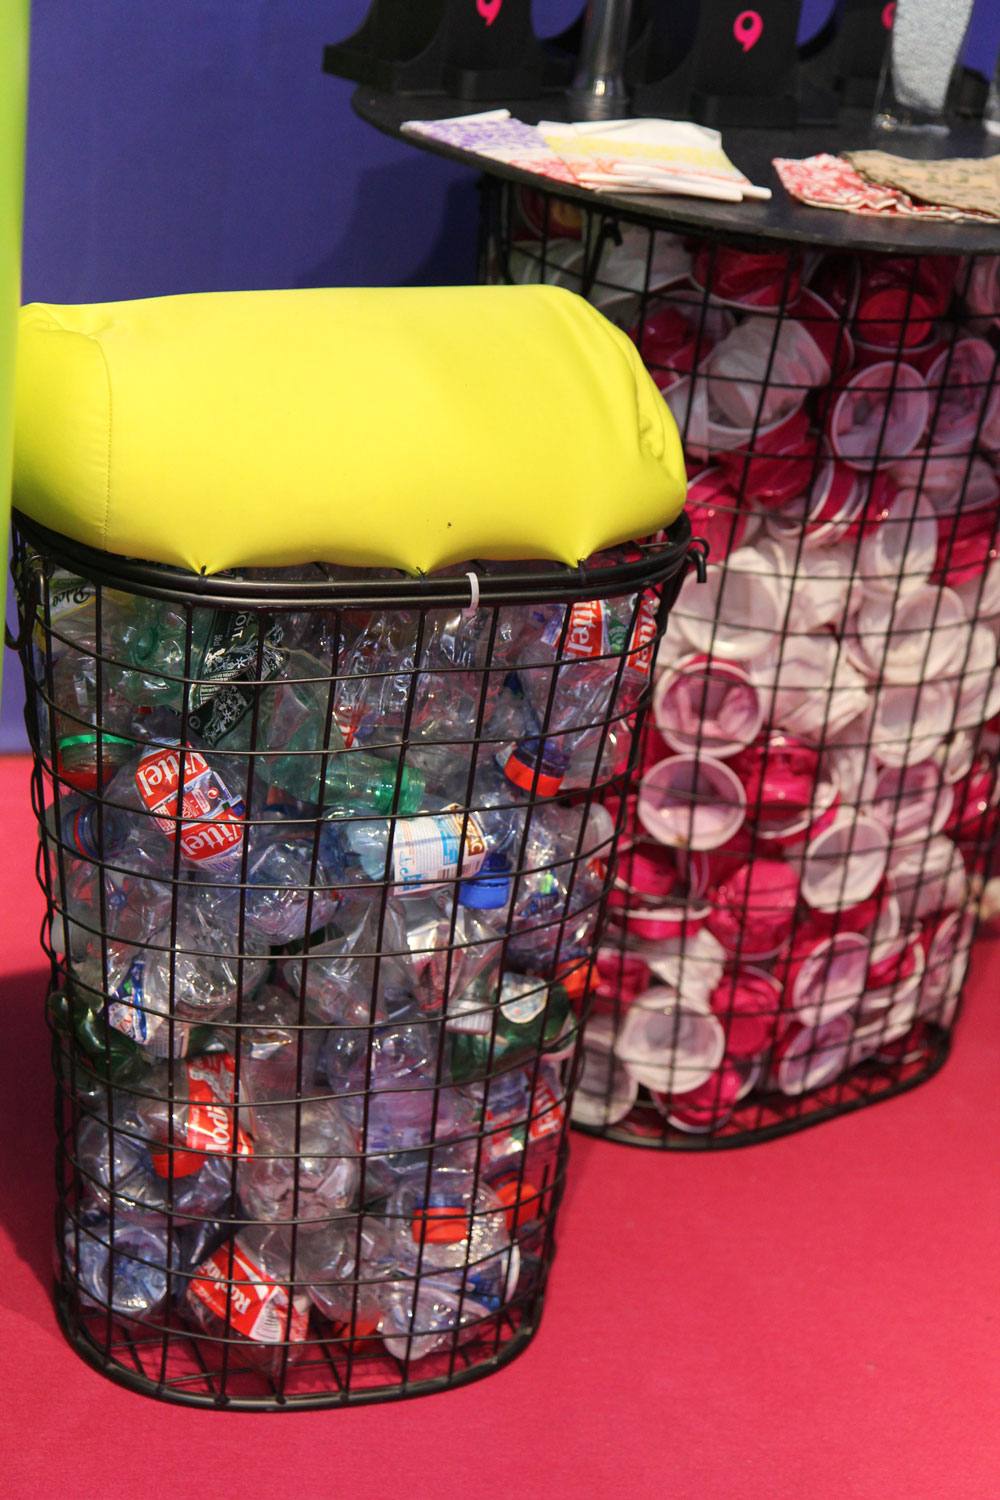 Avec cette poubelle de bouteilles plastiques et de canettes, on peut produire des granules de plastique contenus dans le coussin jaune. Crédit photo Valérie Rohart